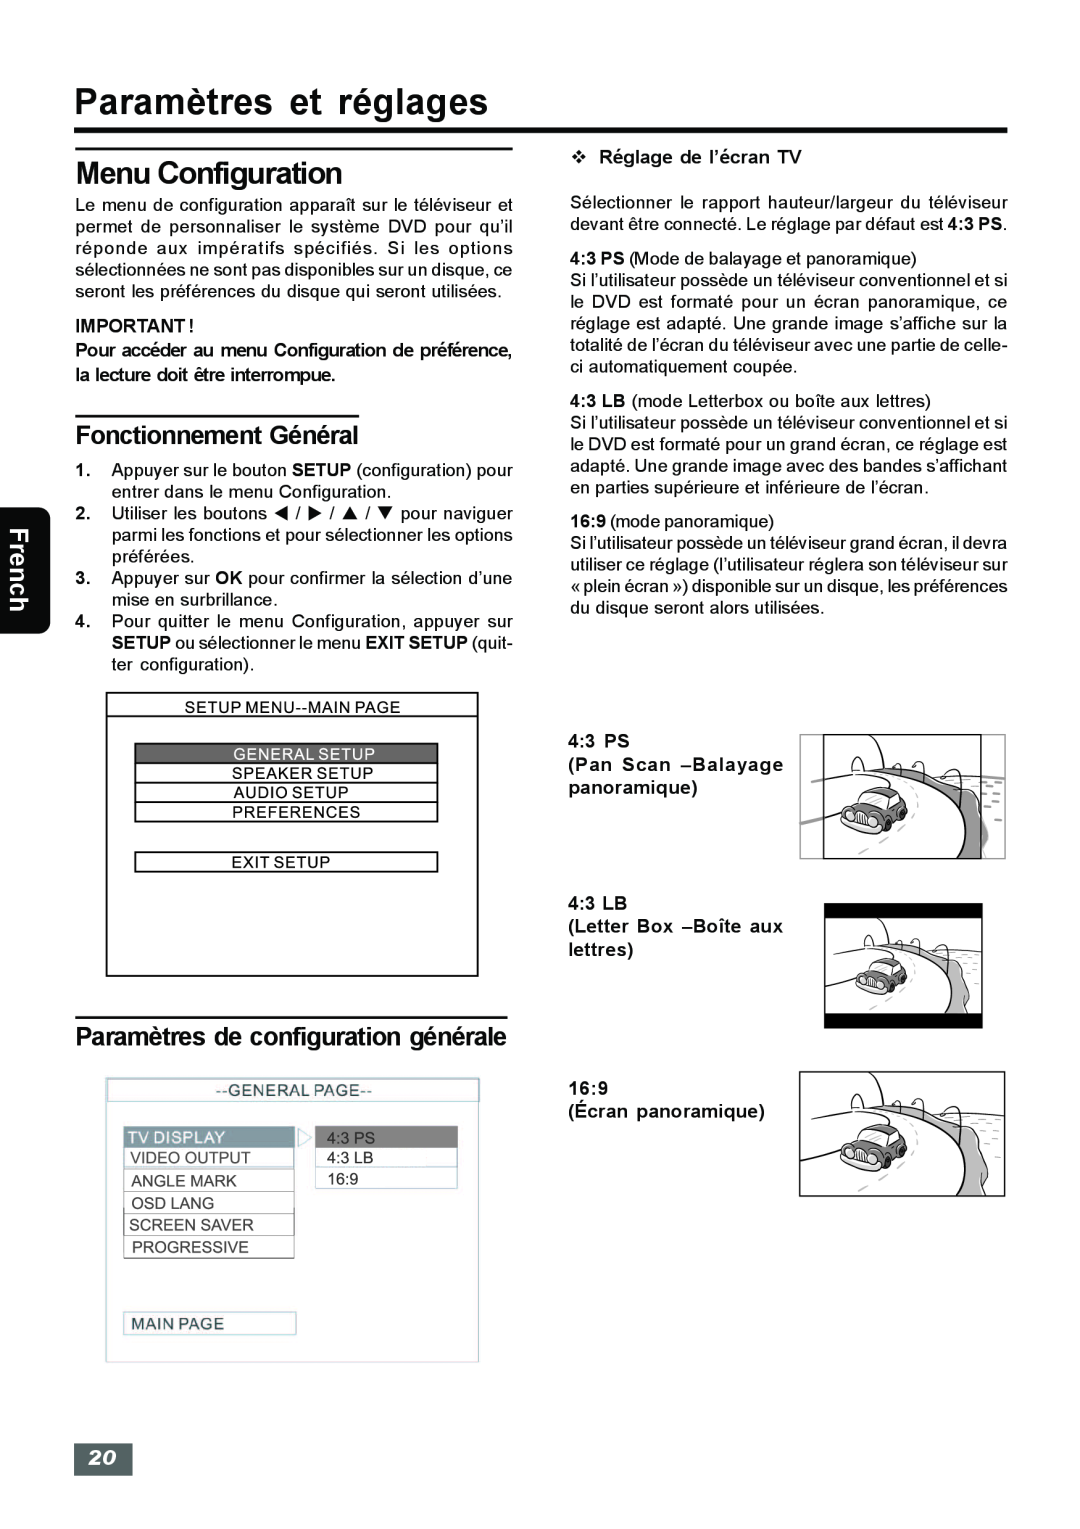 Insignia IS-HTIB102731 owner manual Paramètres et réglages, Menu Configuration, Fonctionnement Général, French 